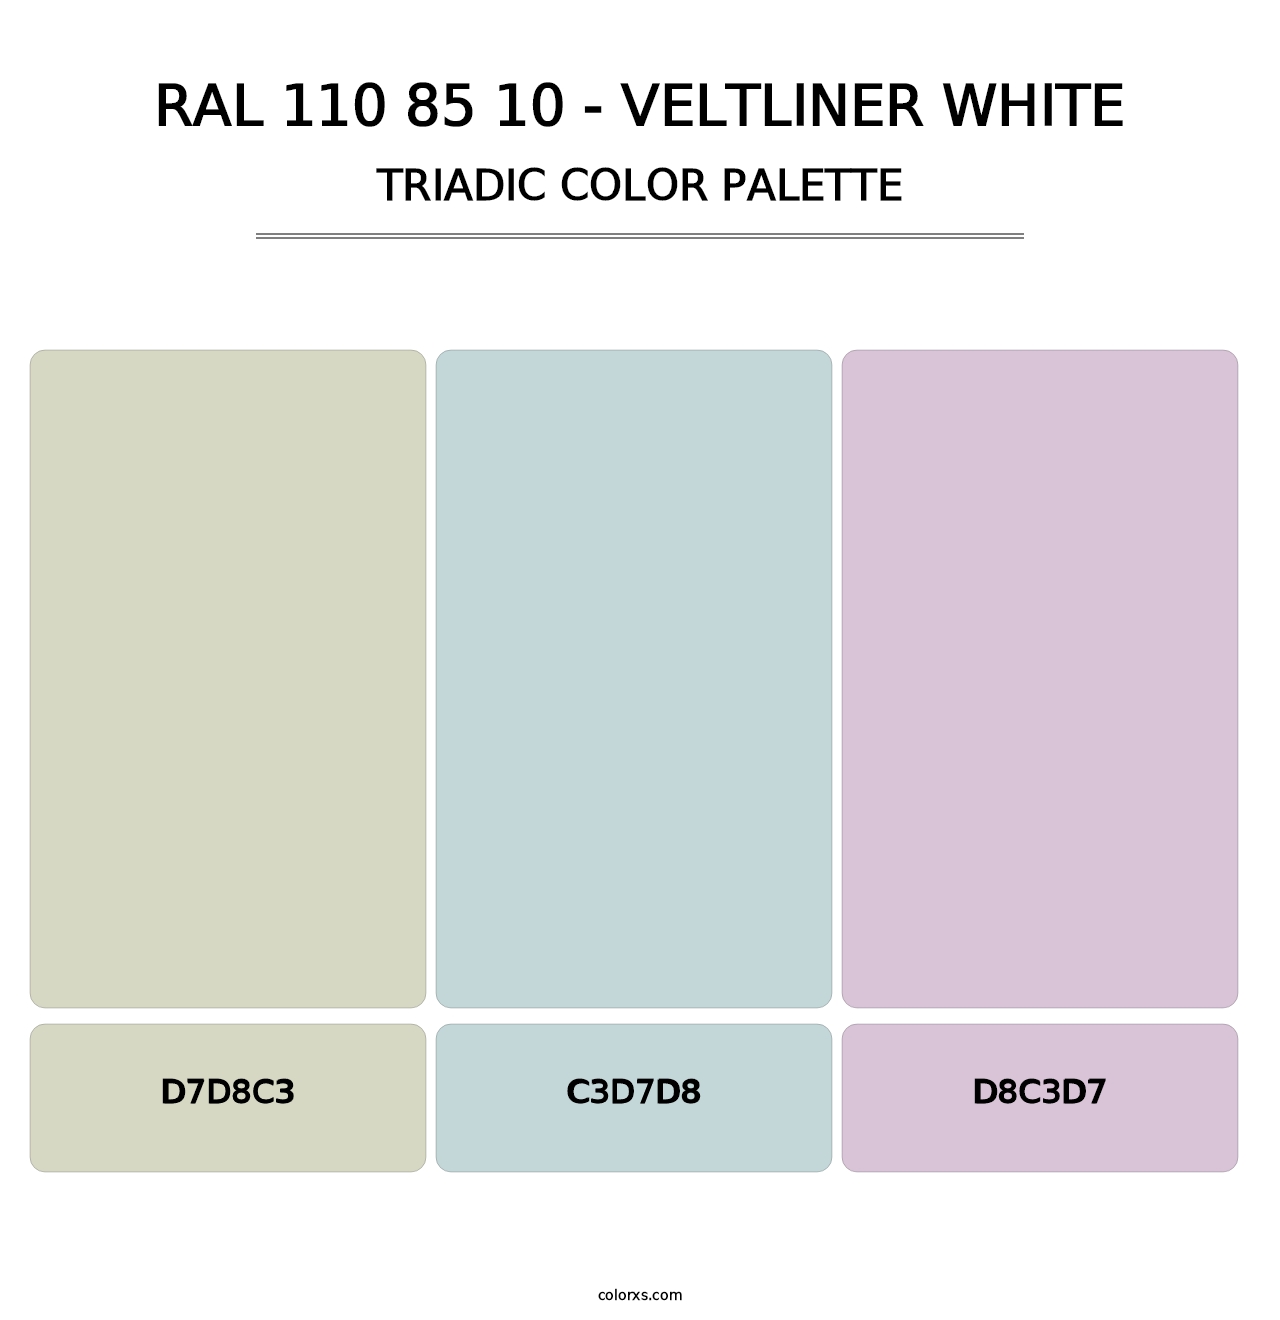 RAL 110 85 10 - Veltliner White - Triadic Color Palette